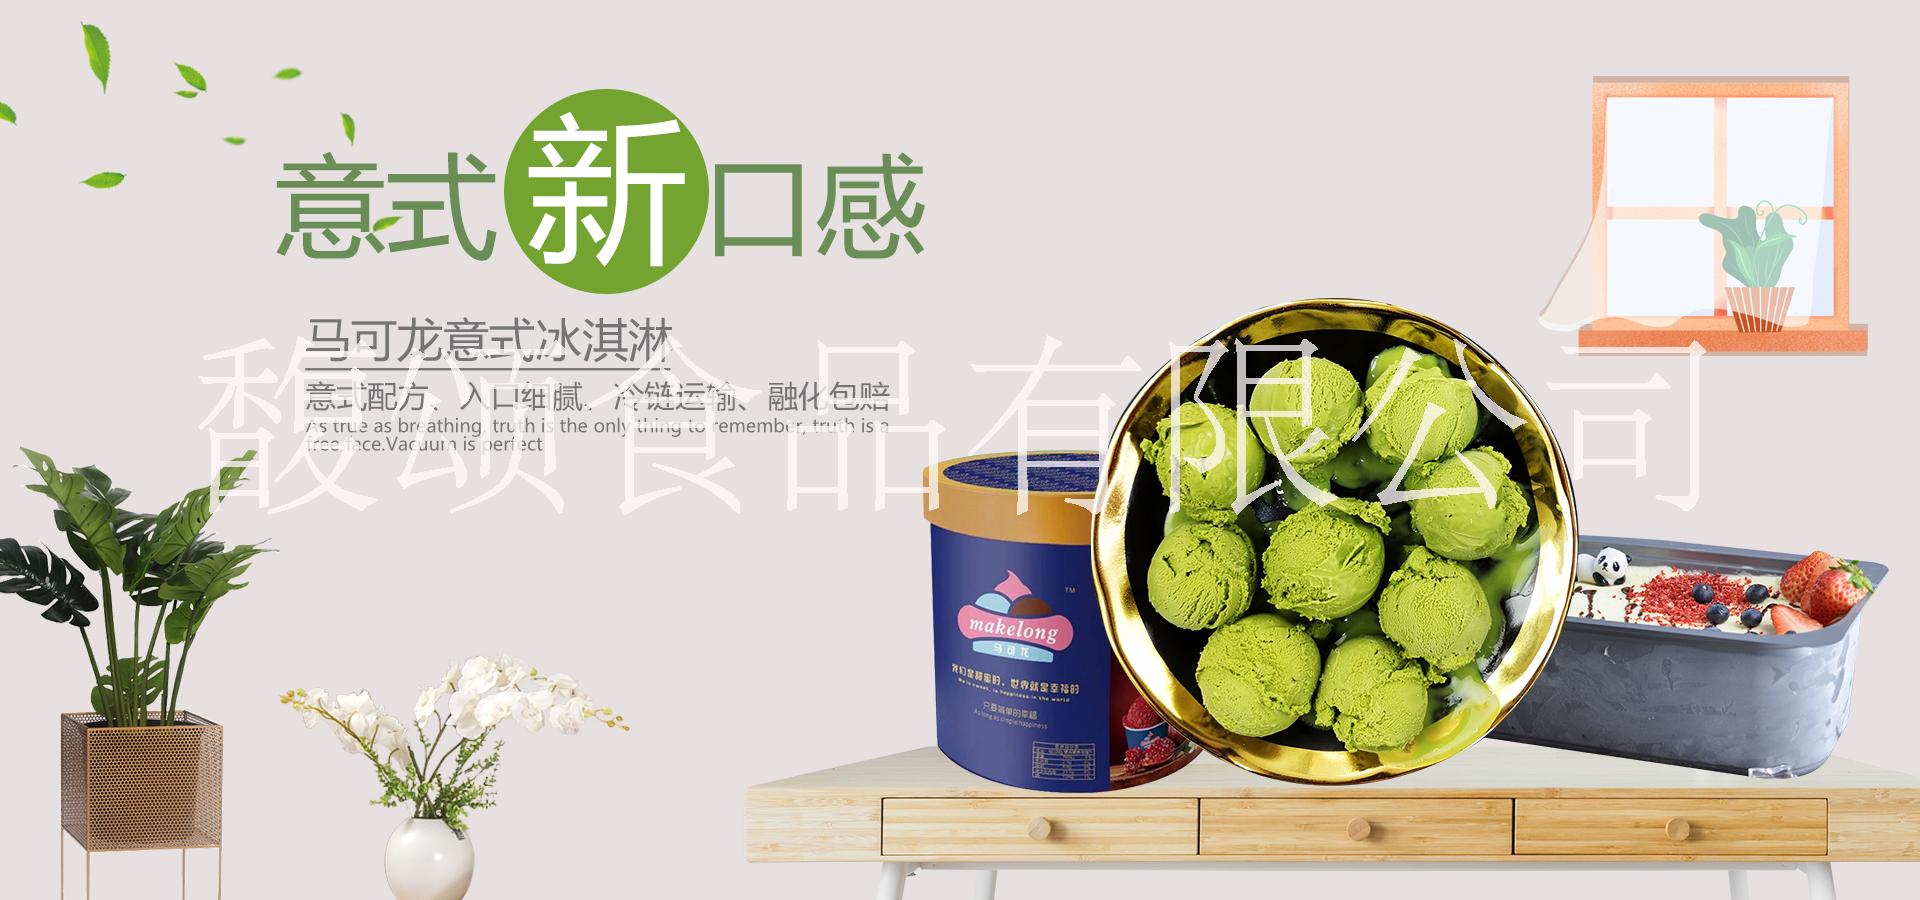 上海市马可龙冰淇淋桶装上海市马可龙冰淇淋桶装厂家直销、价格实惠、厂家批发【馥颂食品（上海）有限公司】